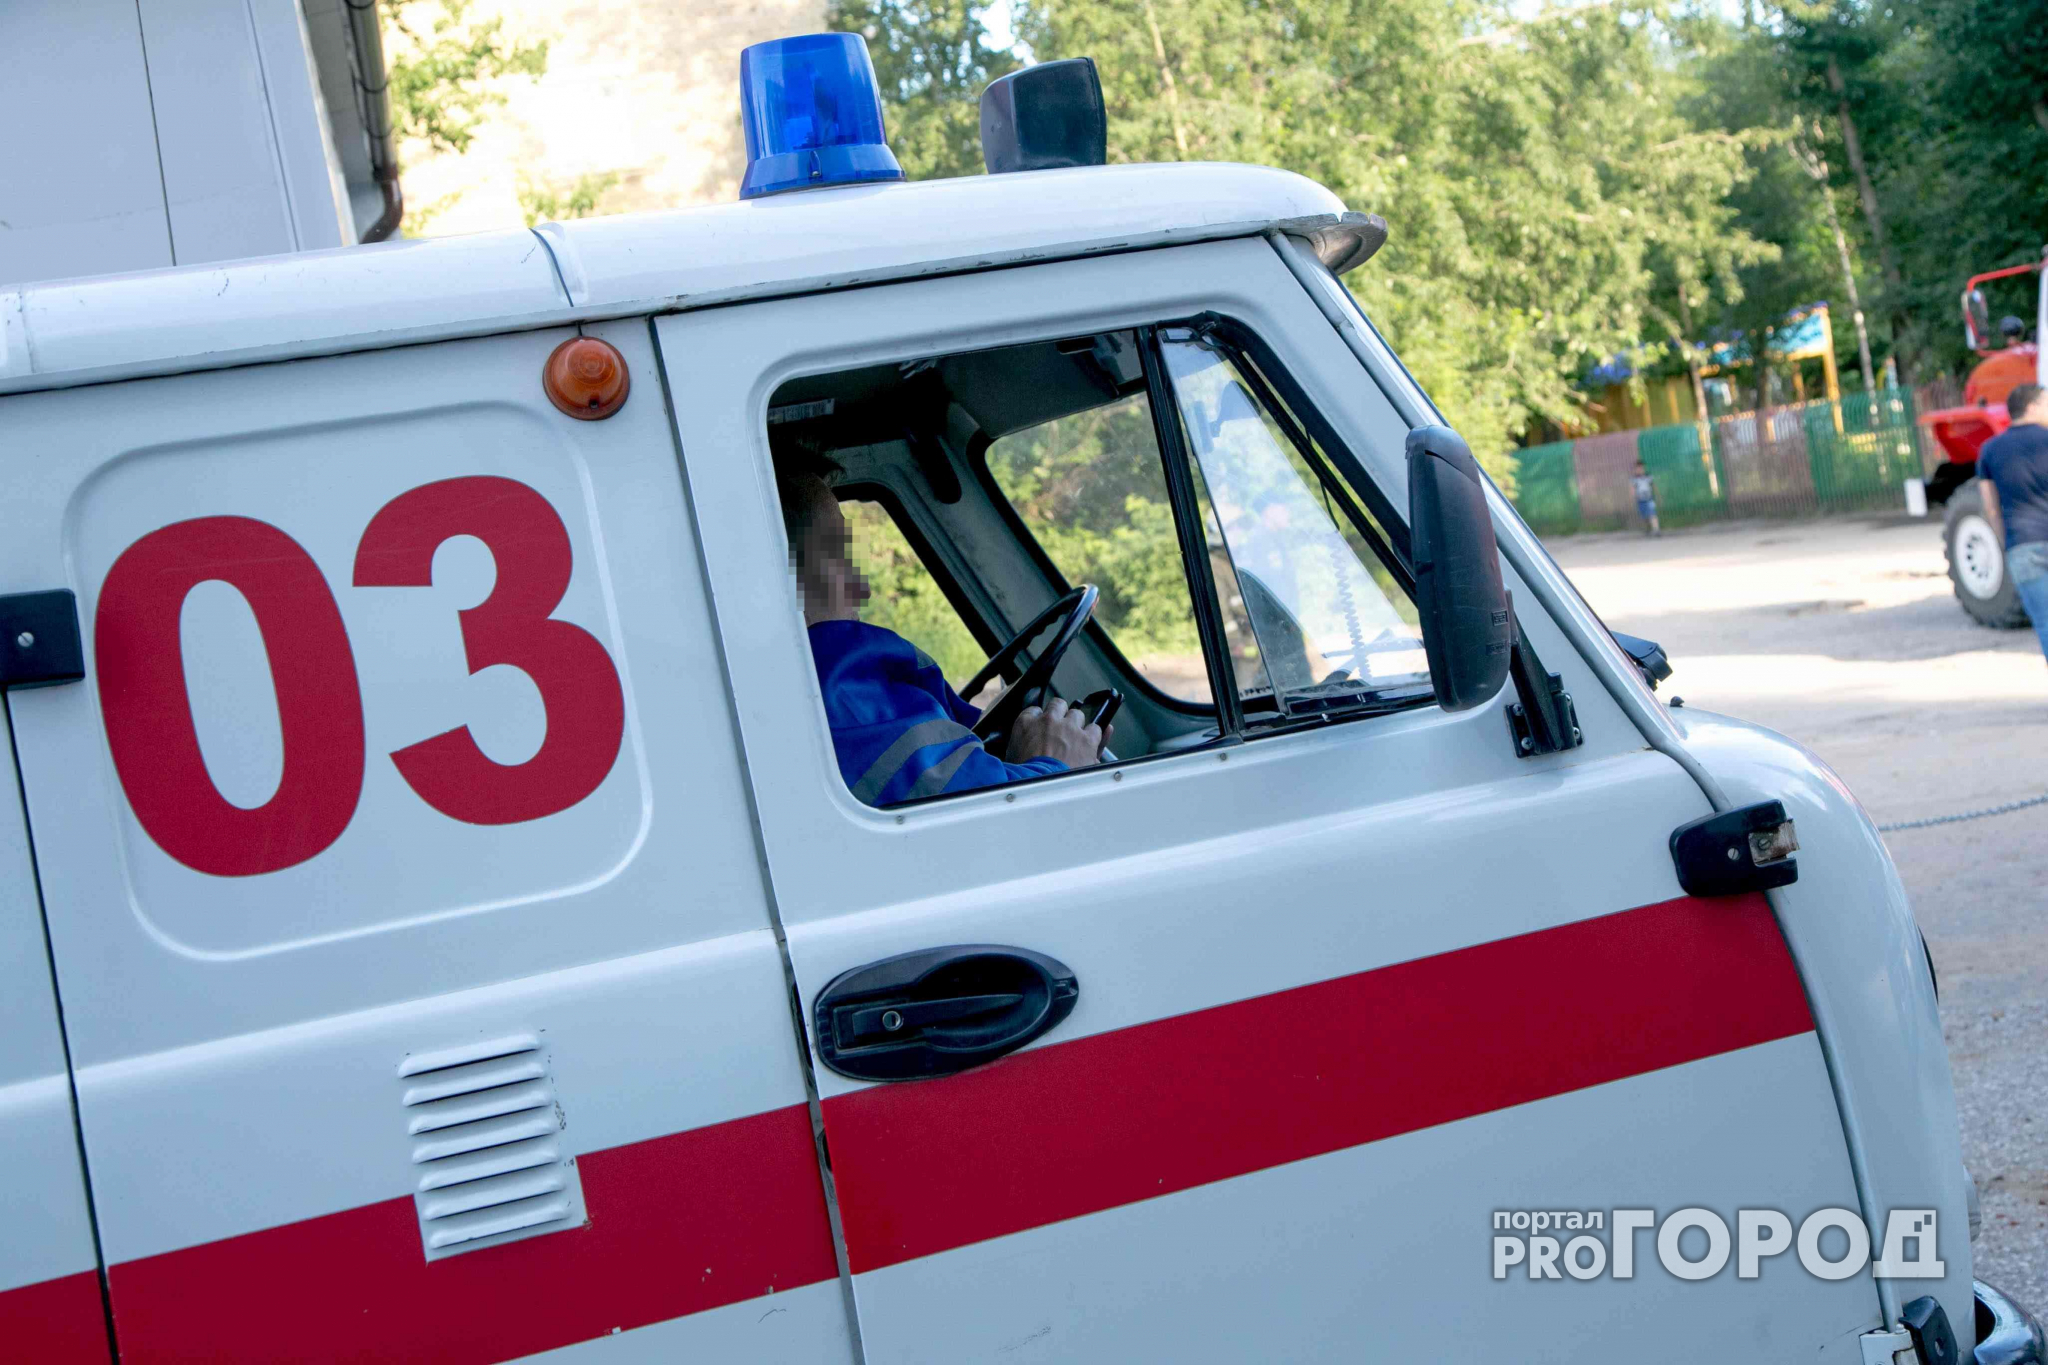 В Кирове мужчина с ножом угрожал врачам из травматологической поликлиники